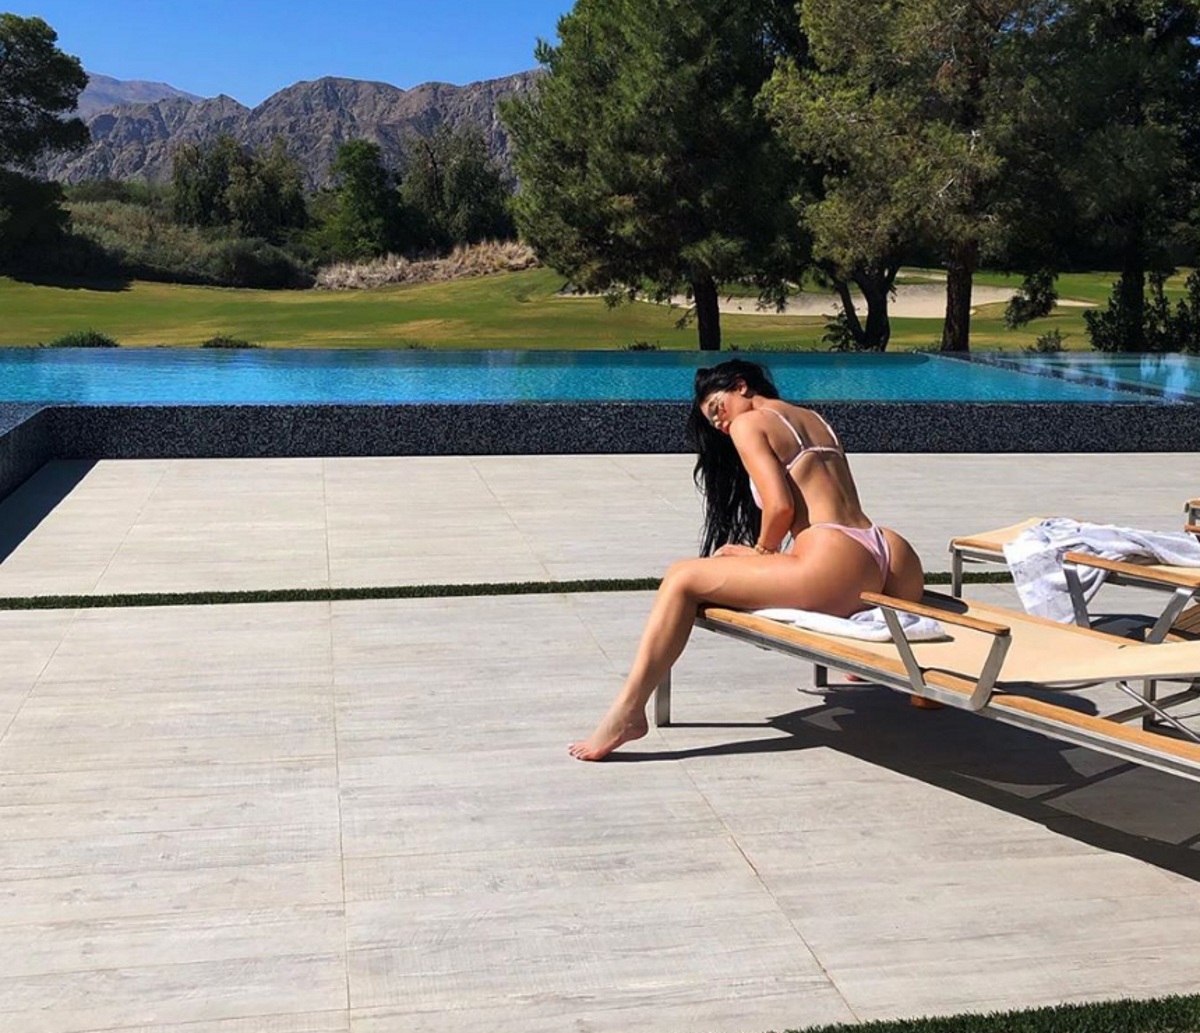 Κylie Jenner: Η καυτή πόζα στο ταξίδι για τα γενέθλια της Kim Kardashian! [pics,vid]